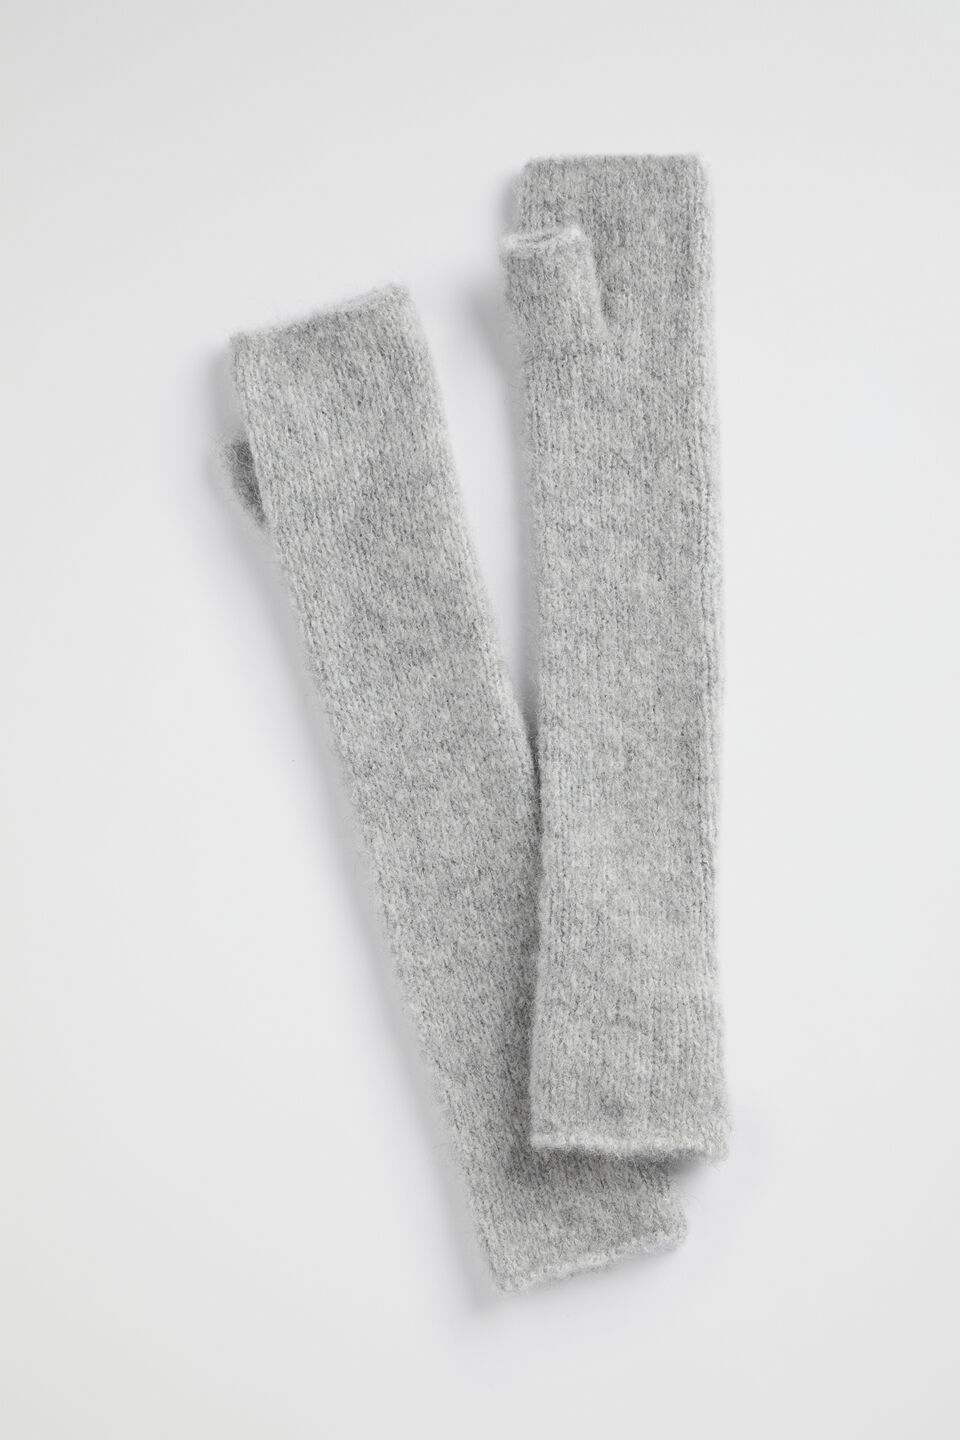 Knit Arm Warmers  Grey Marle